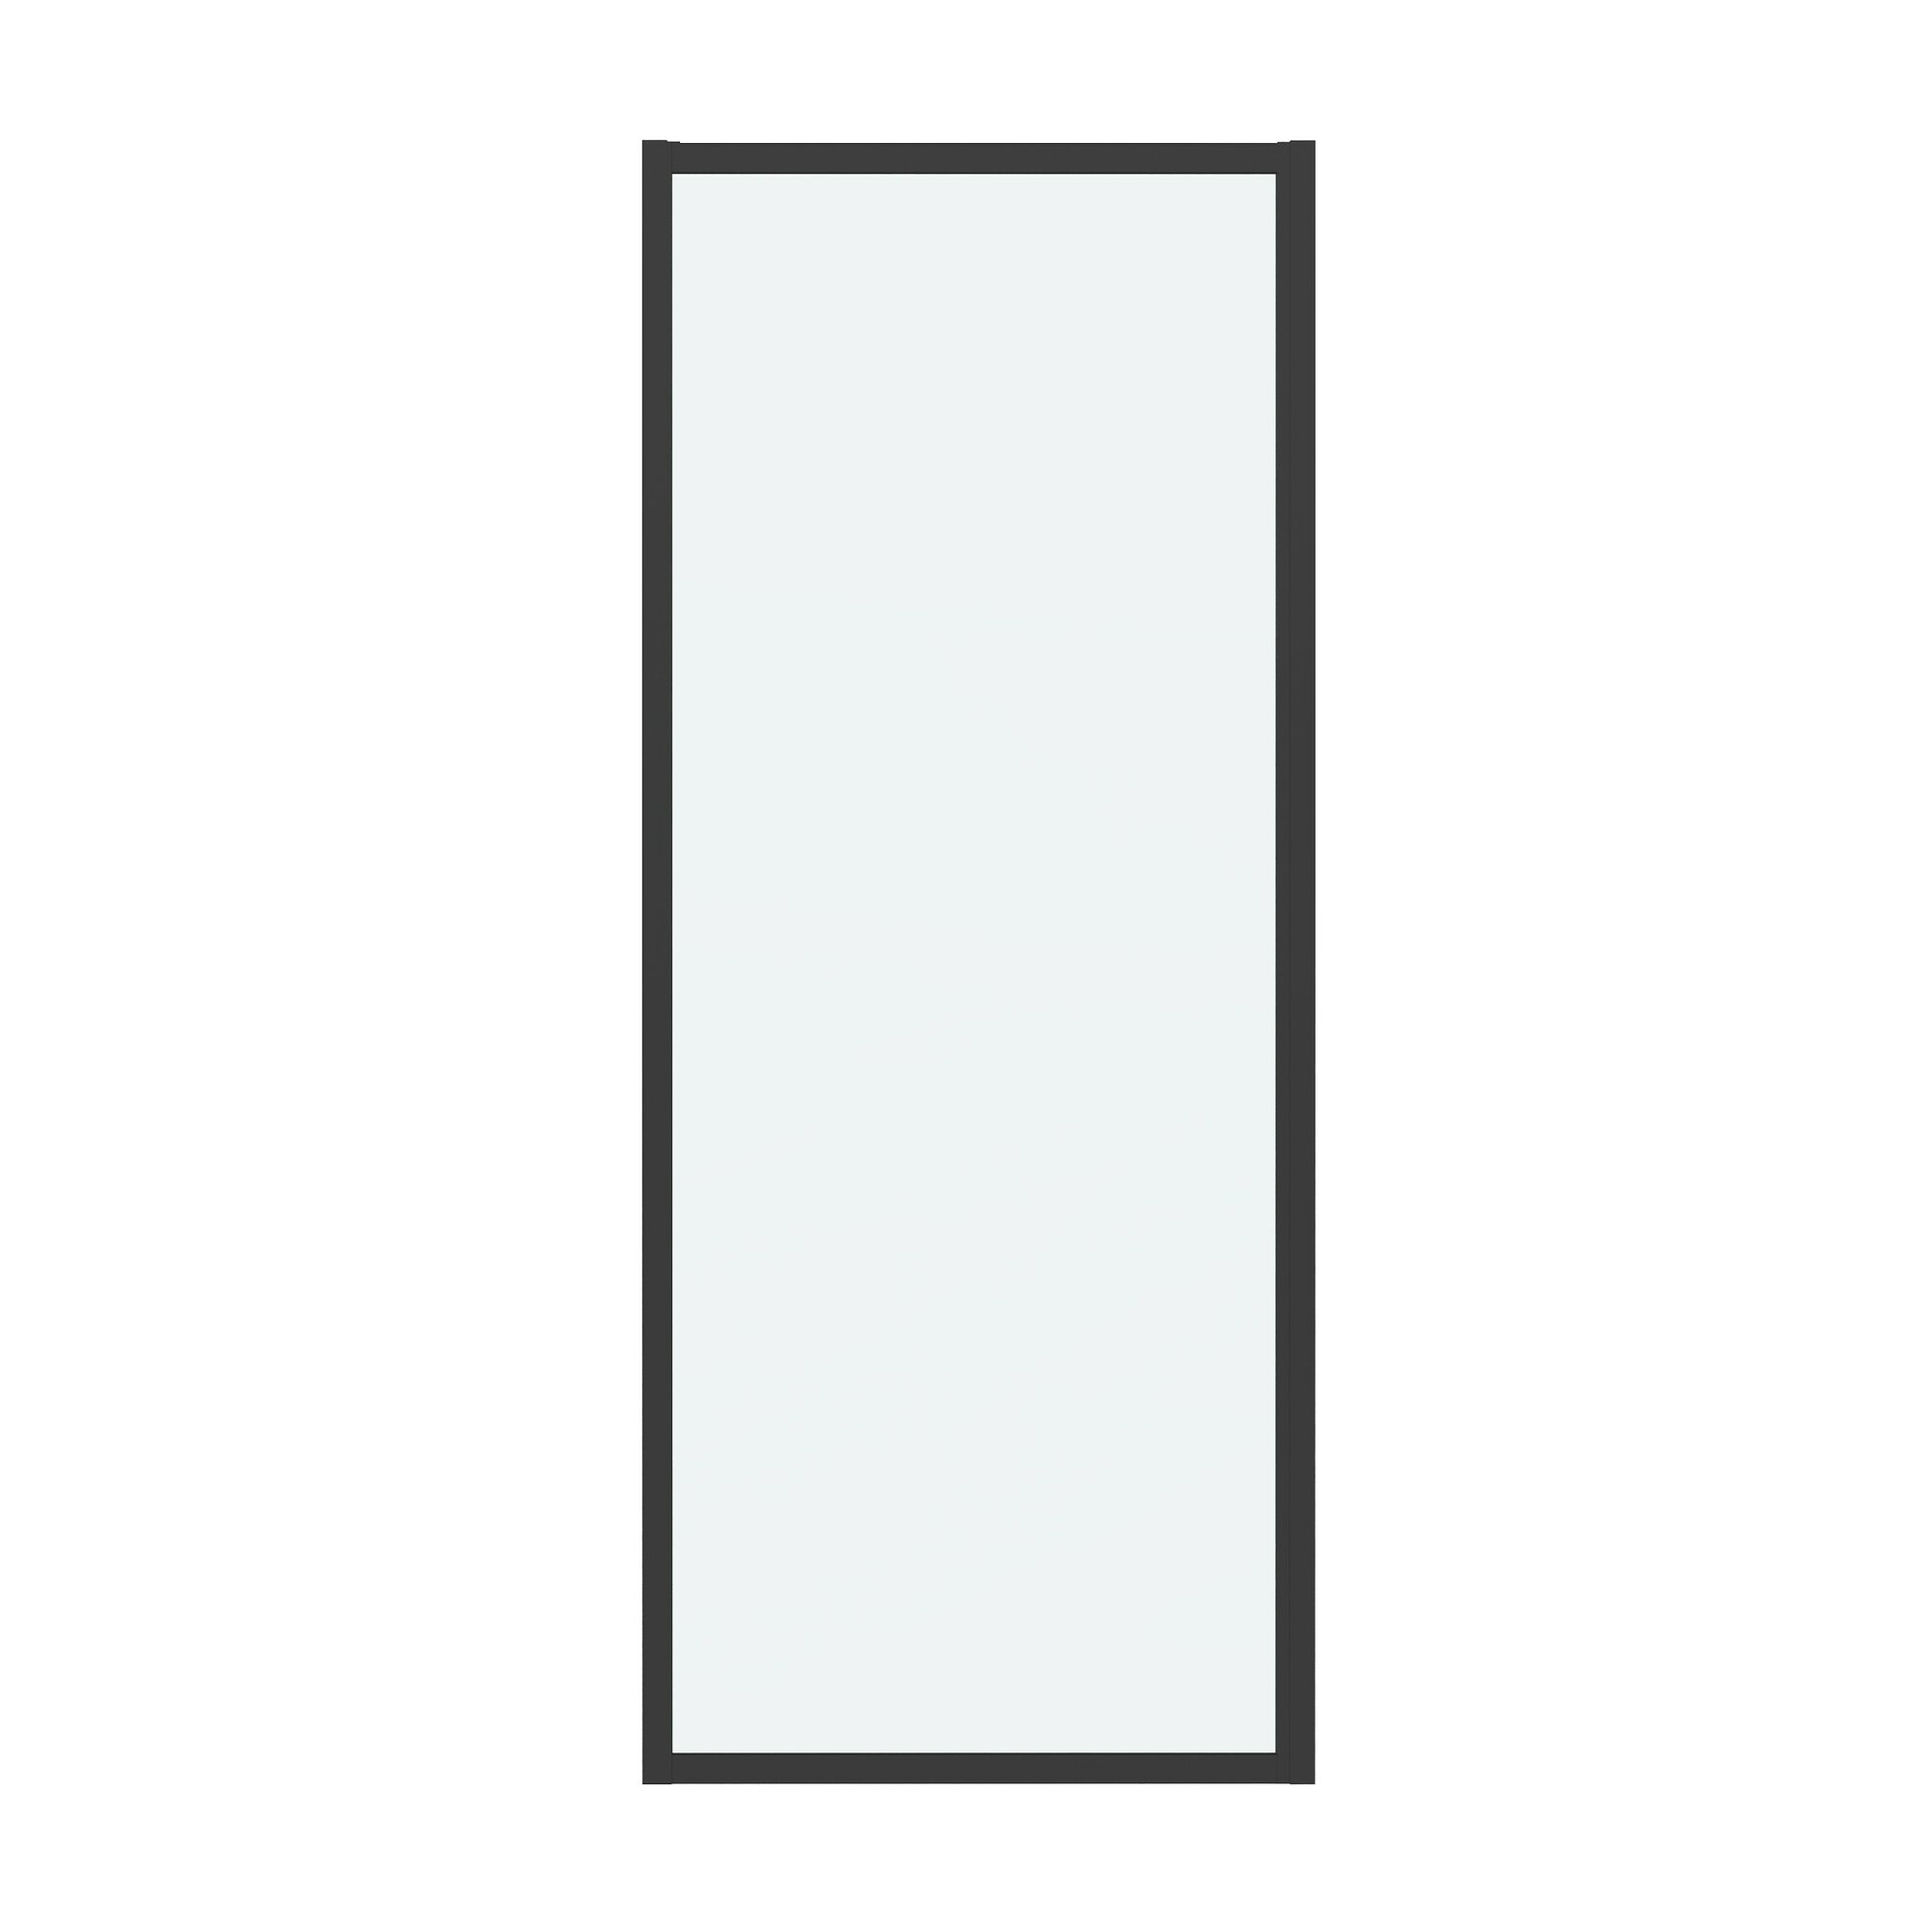 Боковая стенка Grossman Cosmo 80x195 200. K33.02.80.21.00 стекло прозрачное, профиль черный матовый